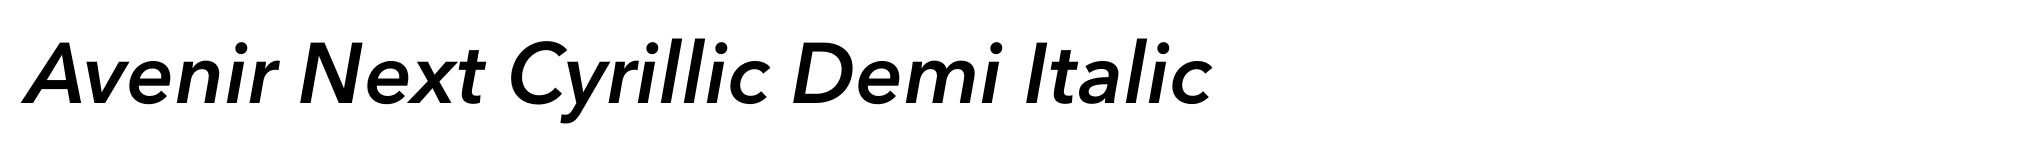 Avenir Next Cyrillic Demi Italic image